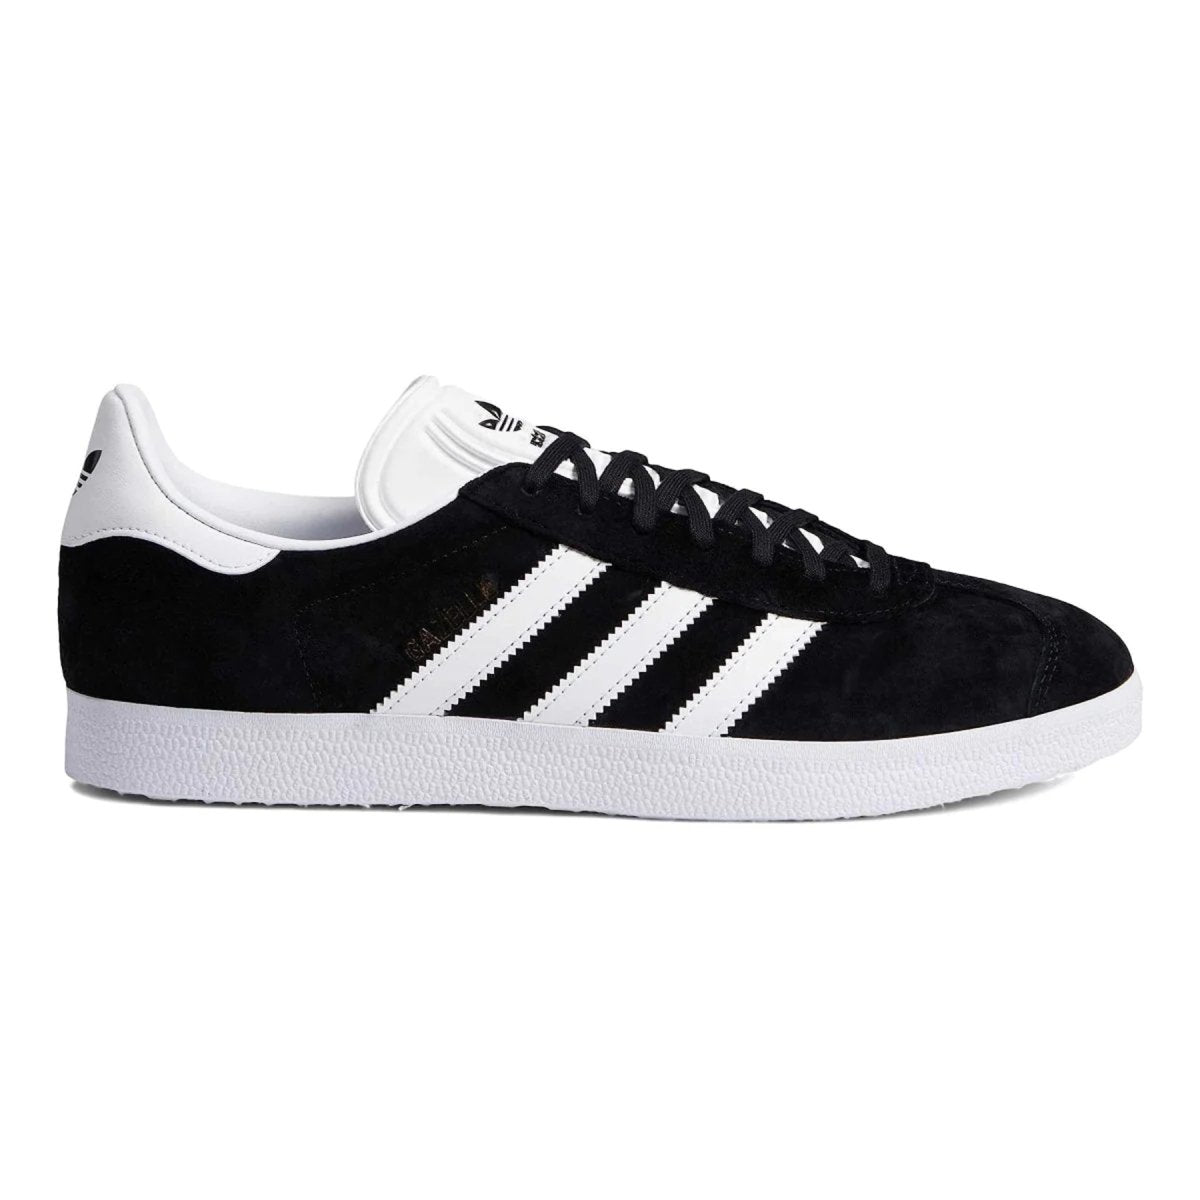 Adidas Gazelle (Black/White) 8.5